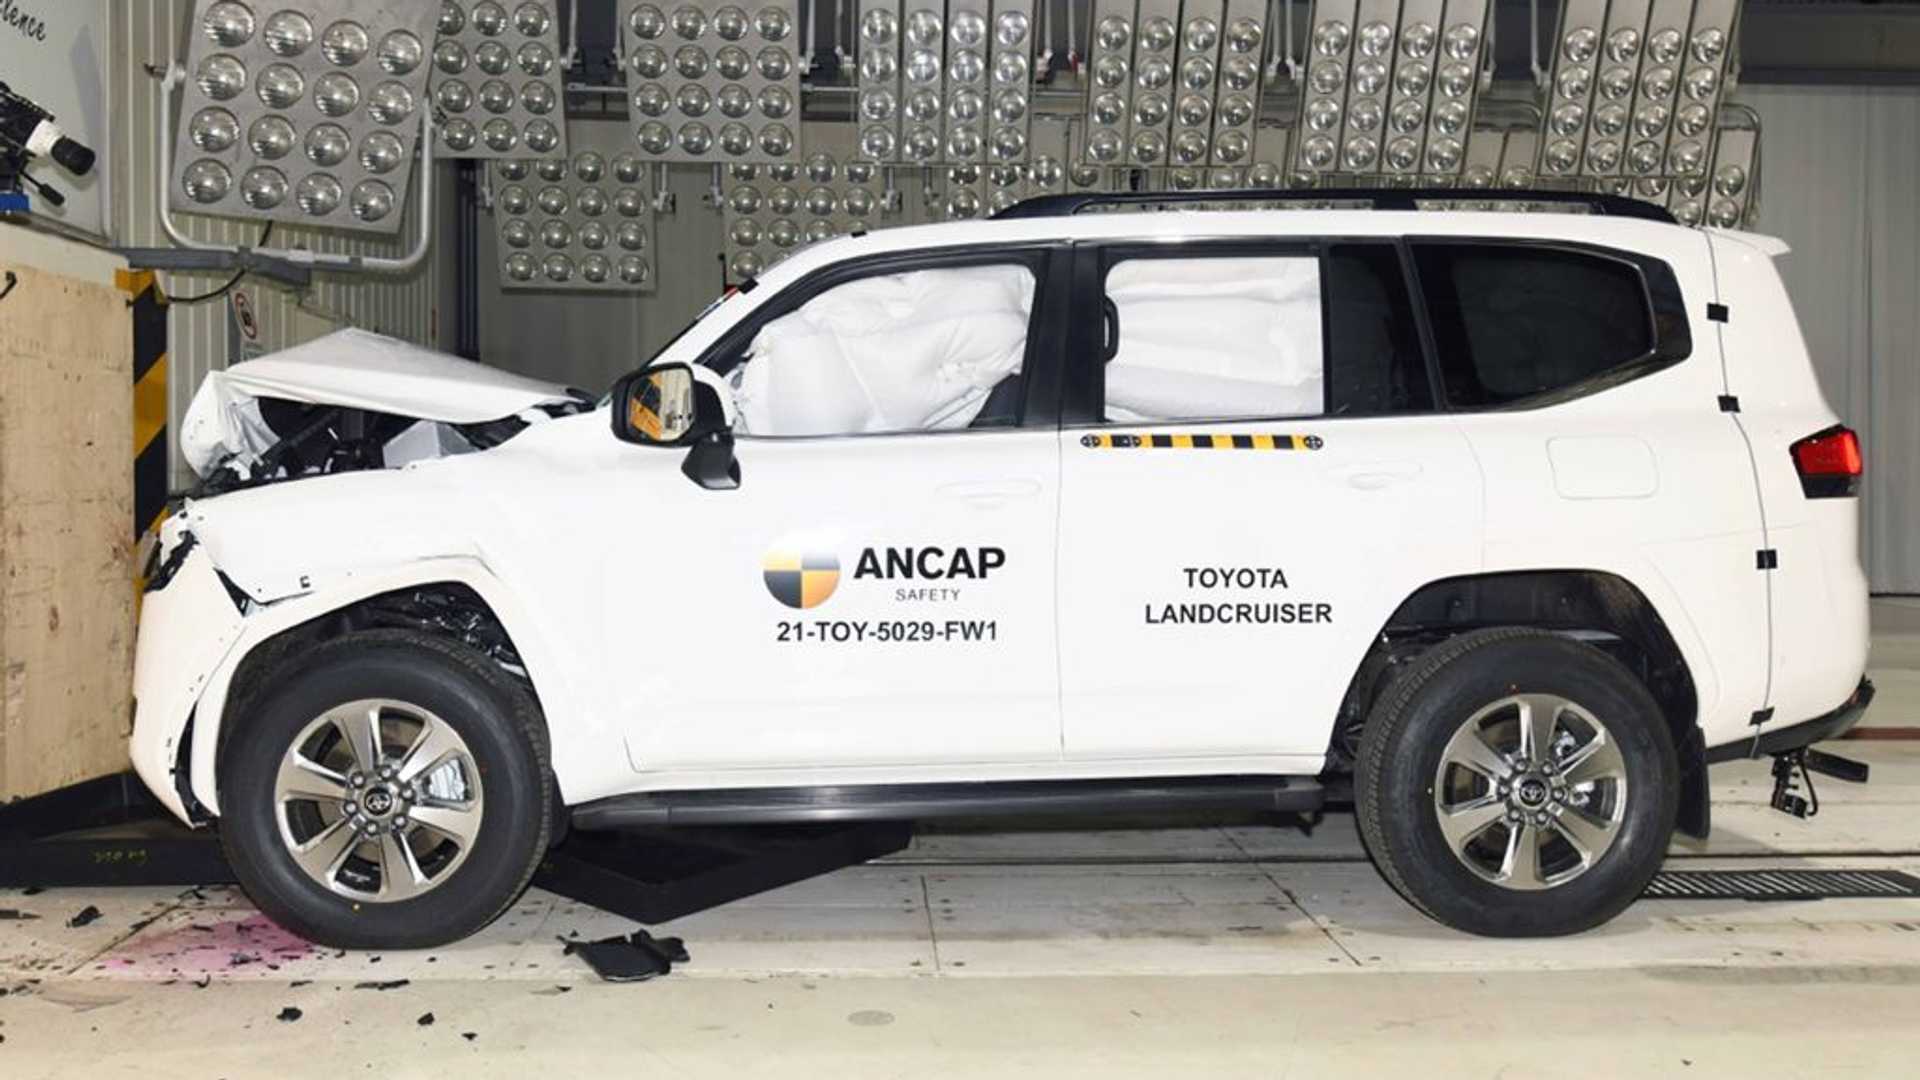 Xem ANCAP đánh giá an toàn của Toyota Land Cruiser 2022 toyota-land-cruiser-ancap-safety-rating-test-front.jpeg